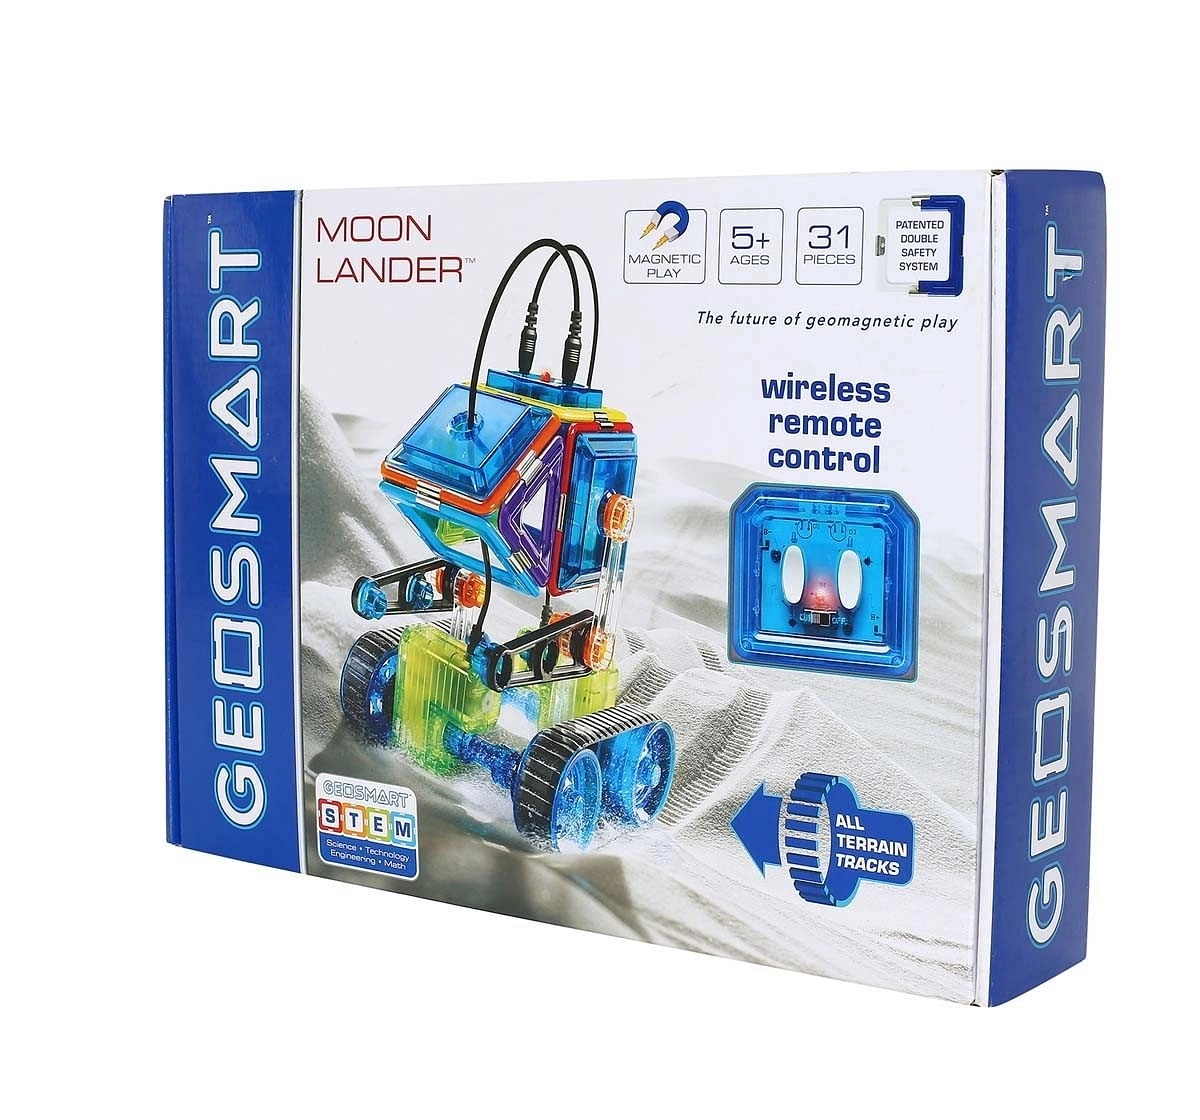 Geosmart Moon Lander Generic Blocks for Kids age 5Y+ 